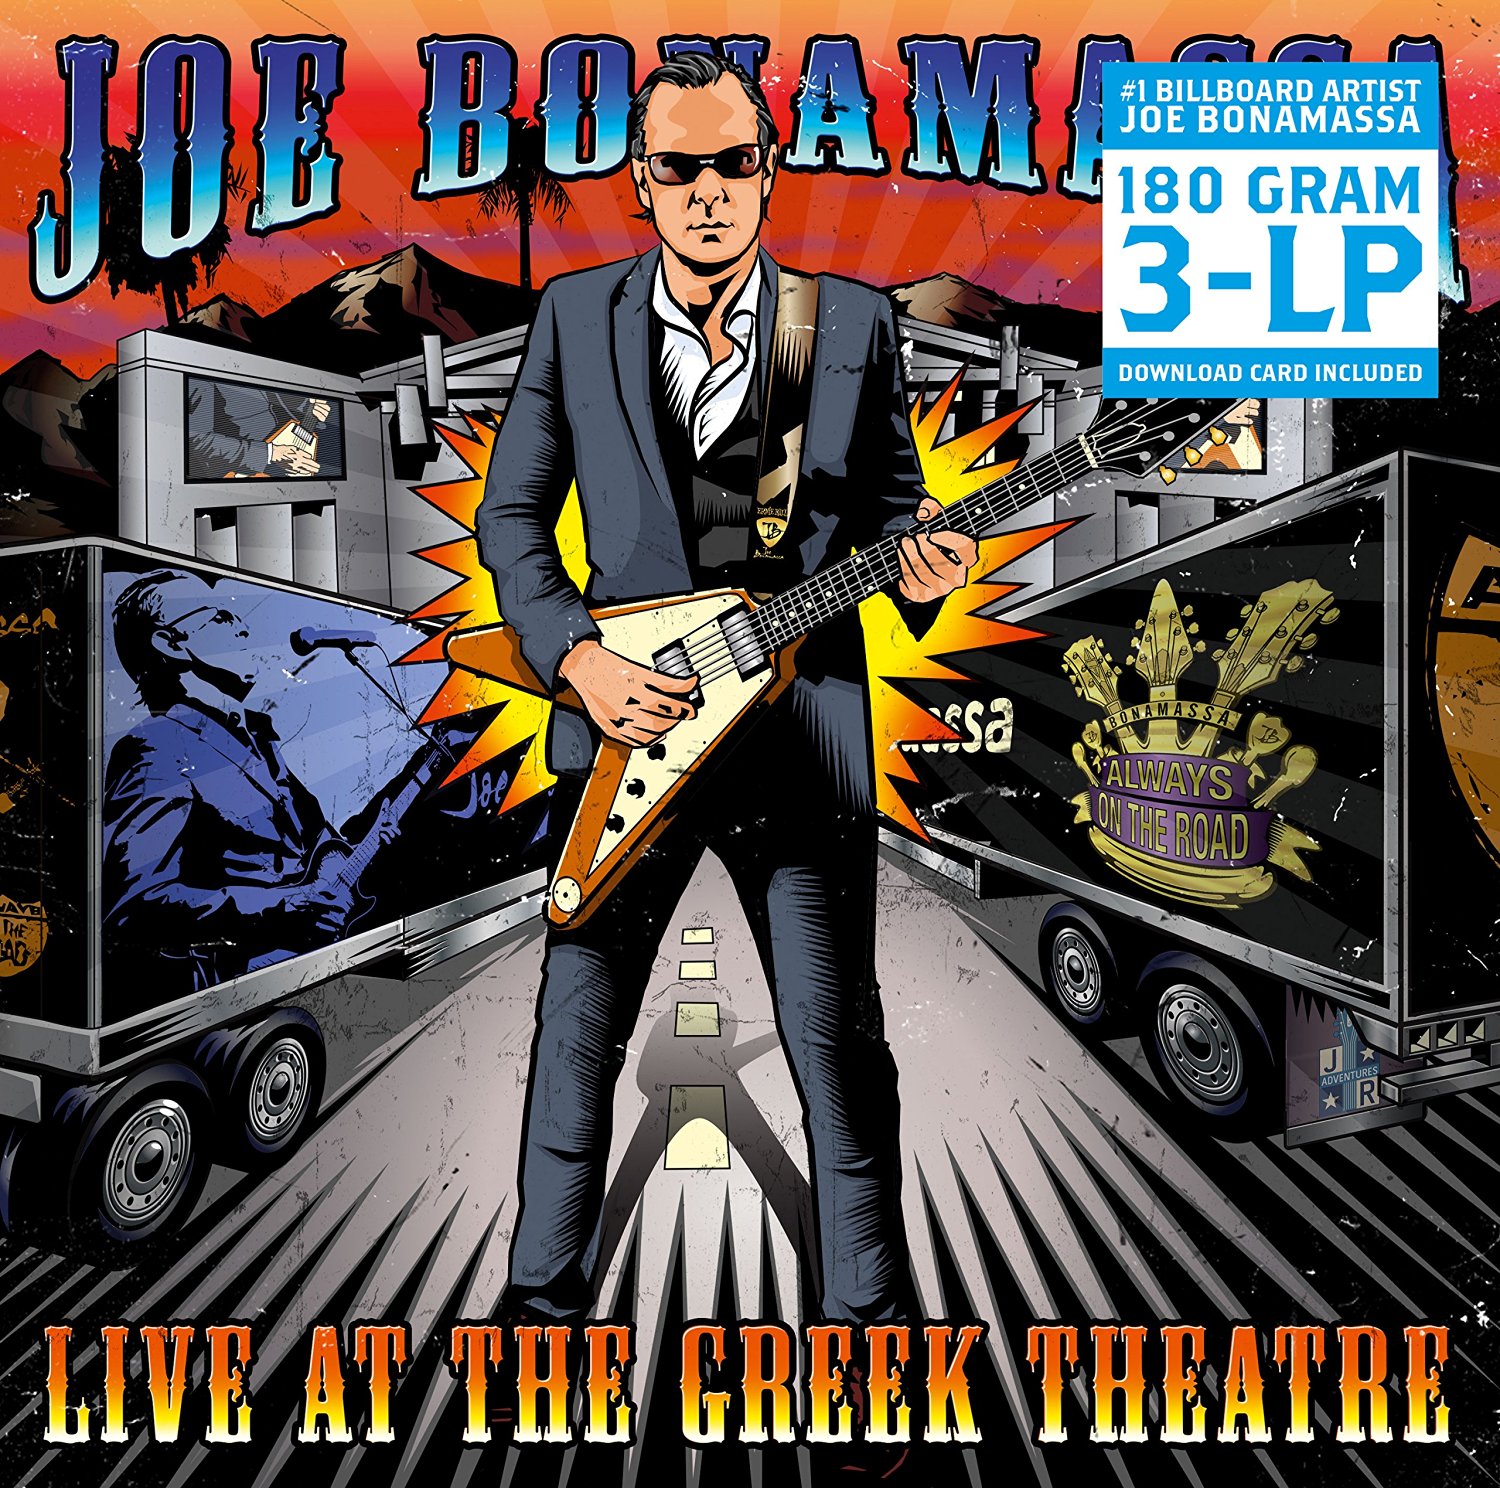 Joe Bonamassa - Live at the Greek Theatre - 3LP